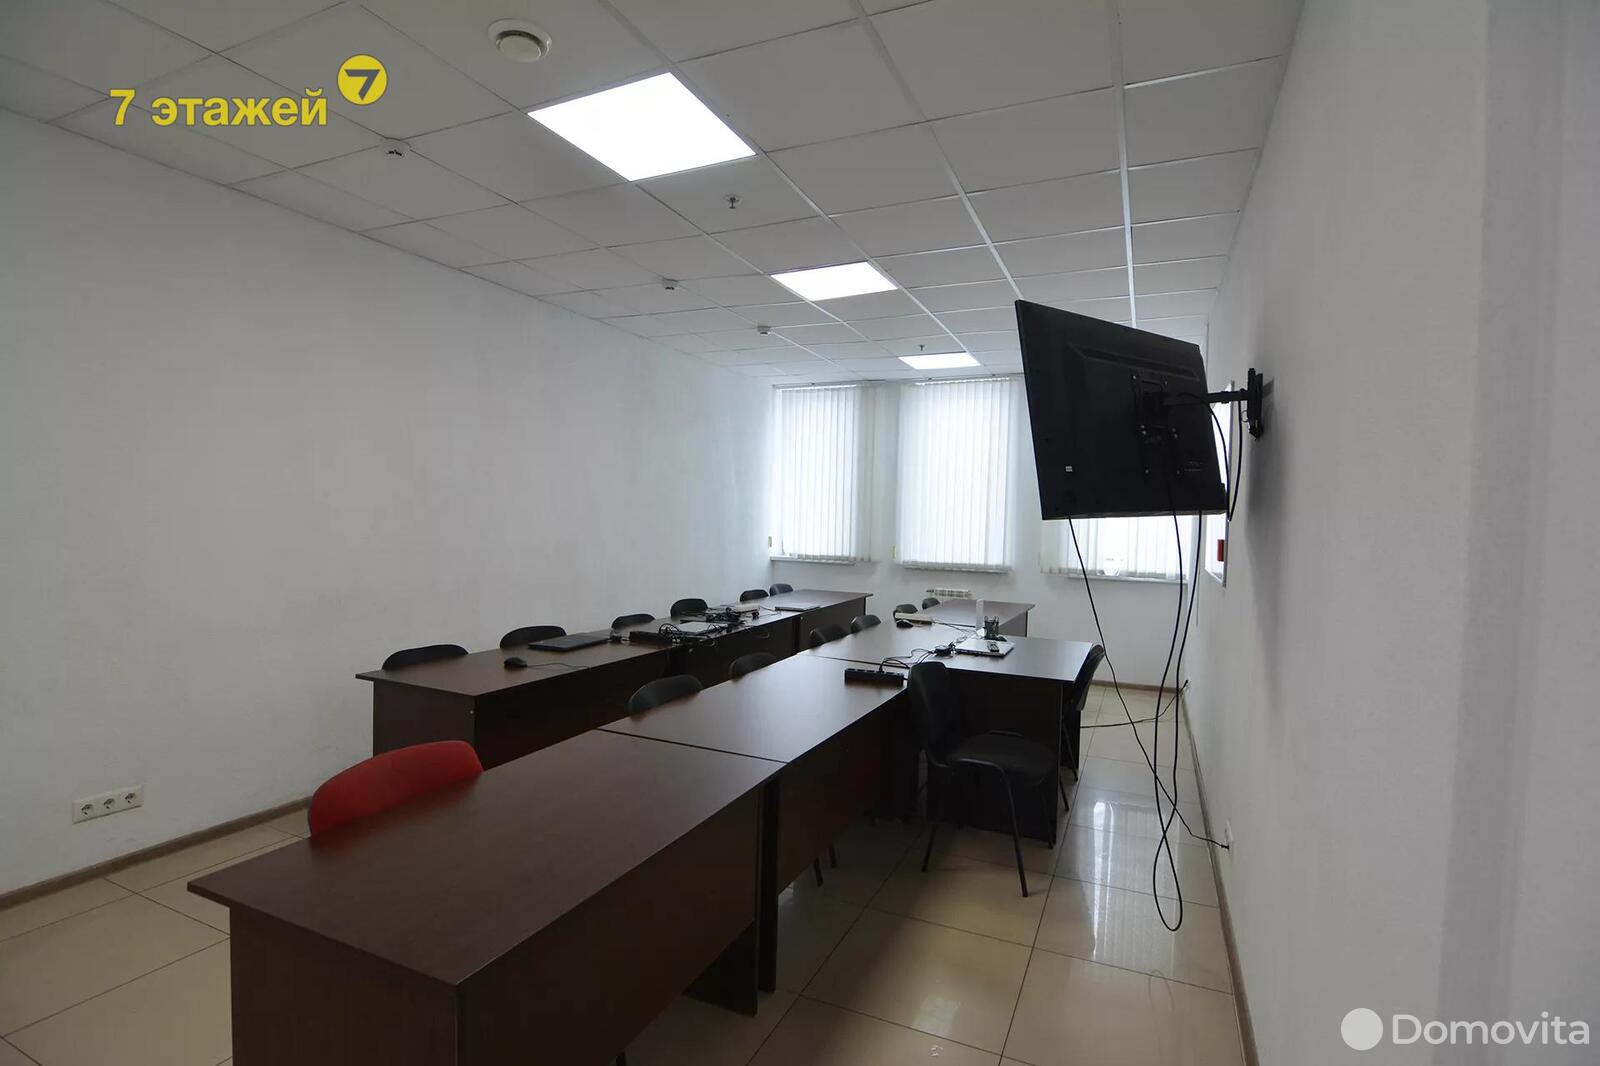 Снять офис на ул. Тимирязева, д. 67 в Минске, 900BYN, код 11469 - фото 1